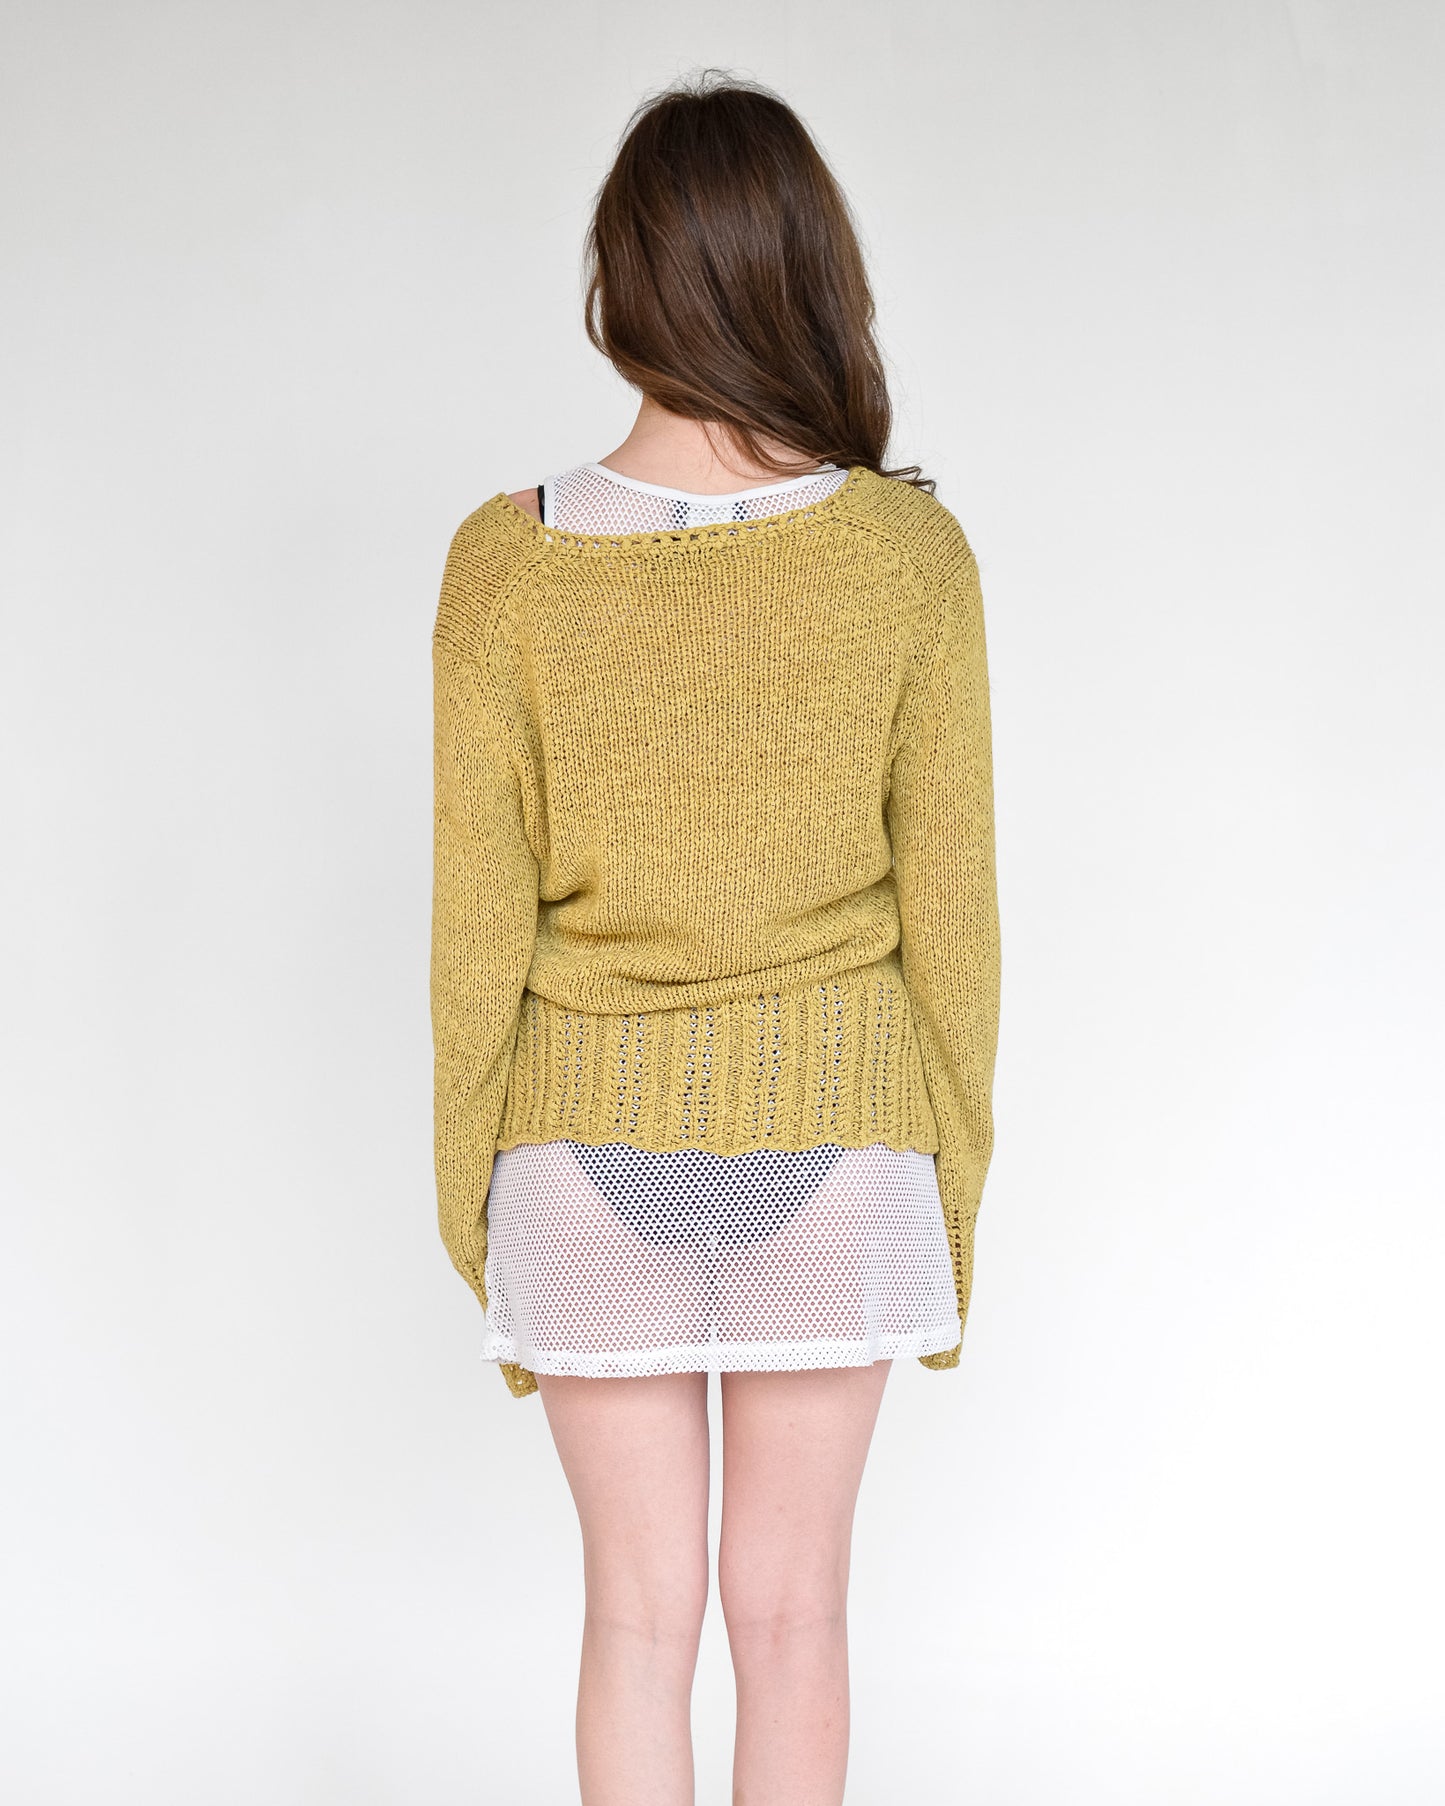 Honey Open Weave Sweater (L)